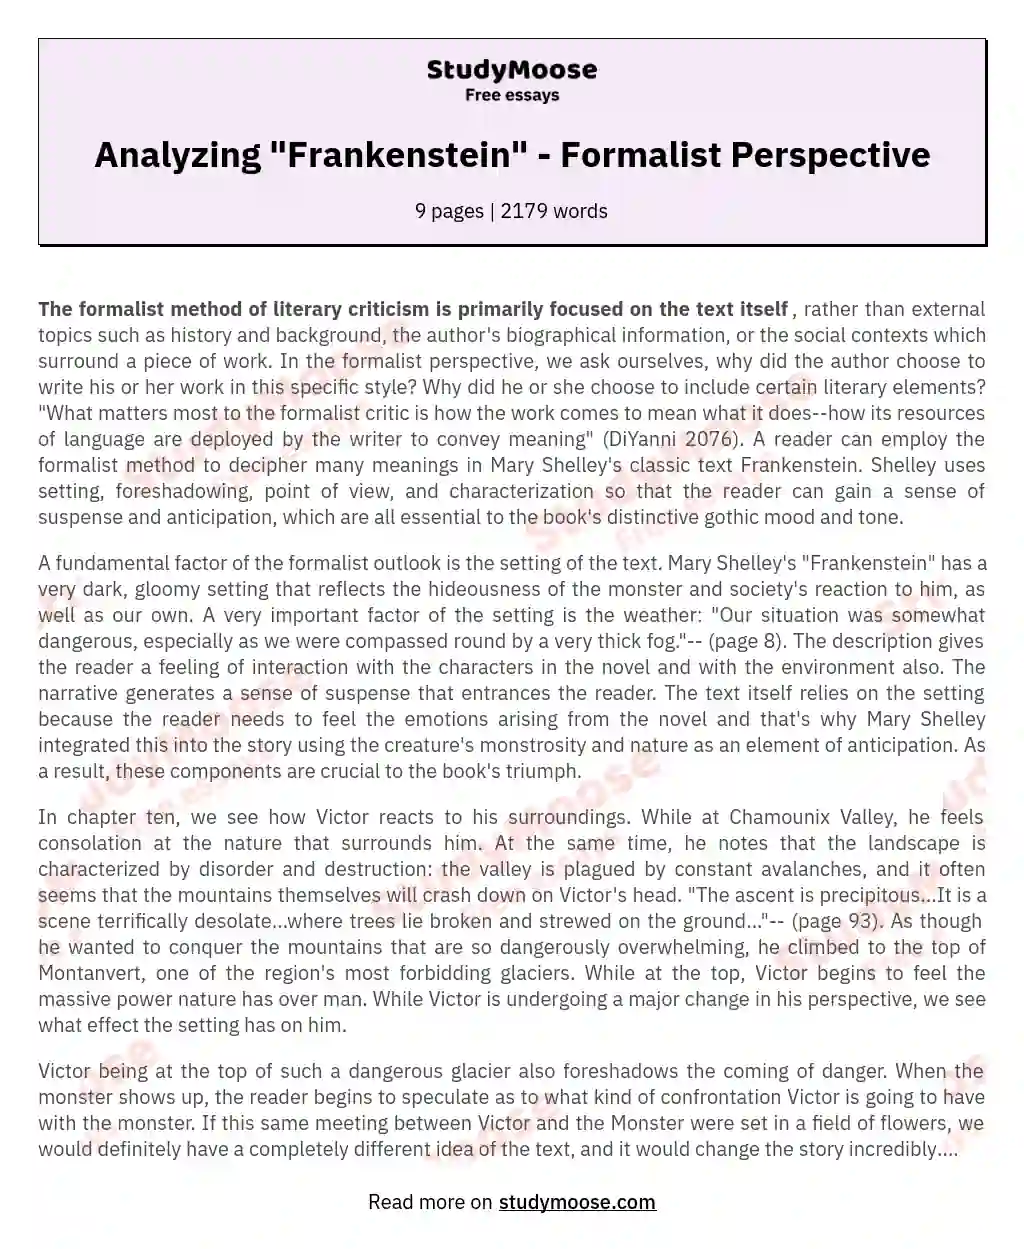 Analyzing "Frankenstein" - Formalist Perspective essay